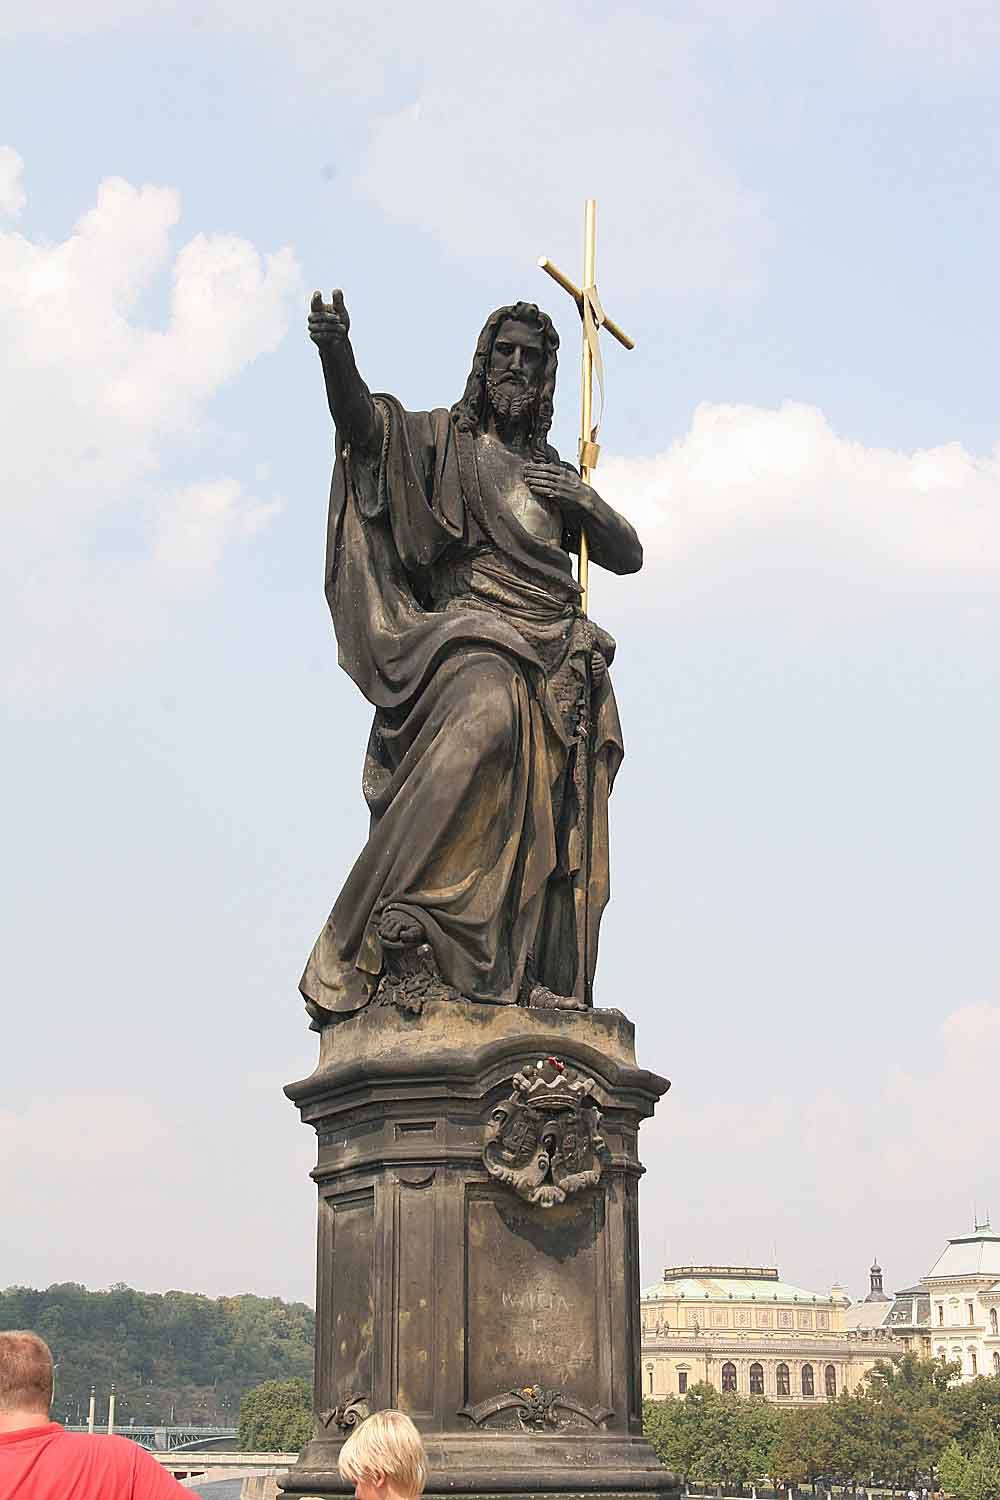 Saint John Statue At Charles Bridge, Prague